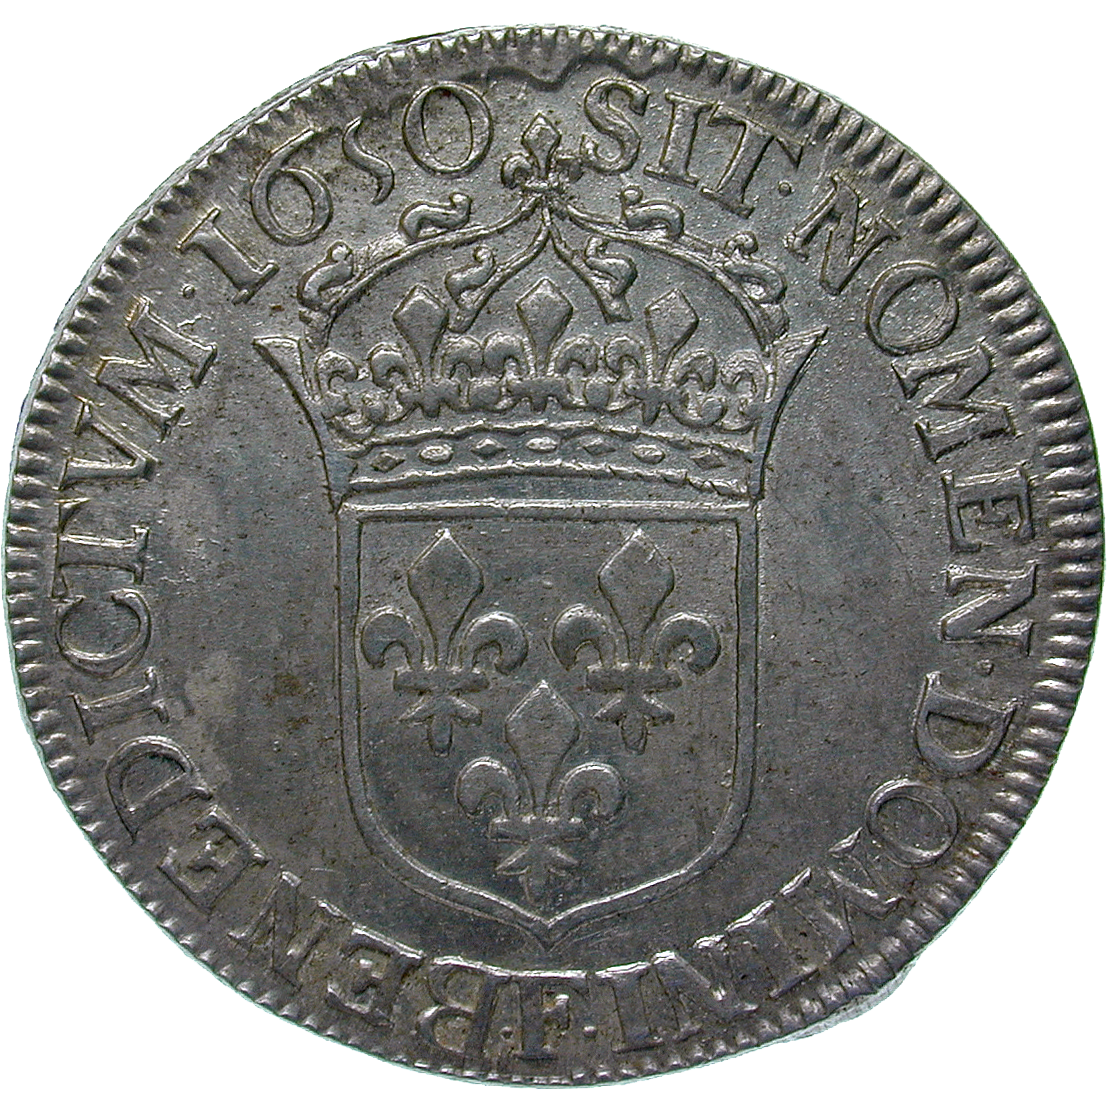 Königreich Frankreich, Ludwig XIV., 1/2 Ecu blanc 1650 (reverse)